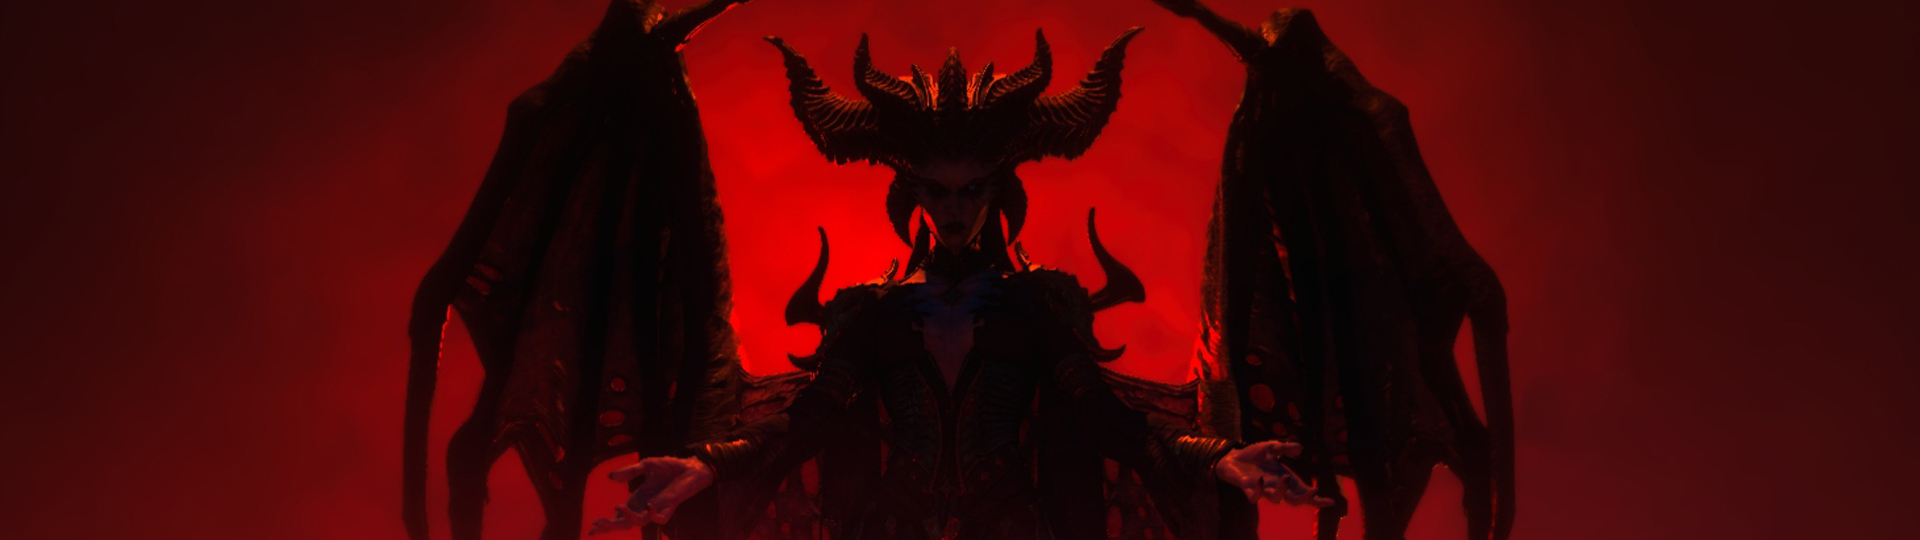 Diablo IV údajně dorazí v dubnu příštího roku | Spekulace